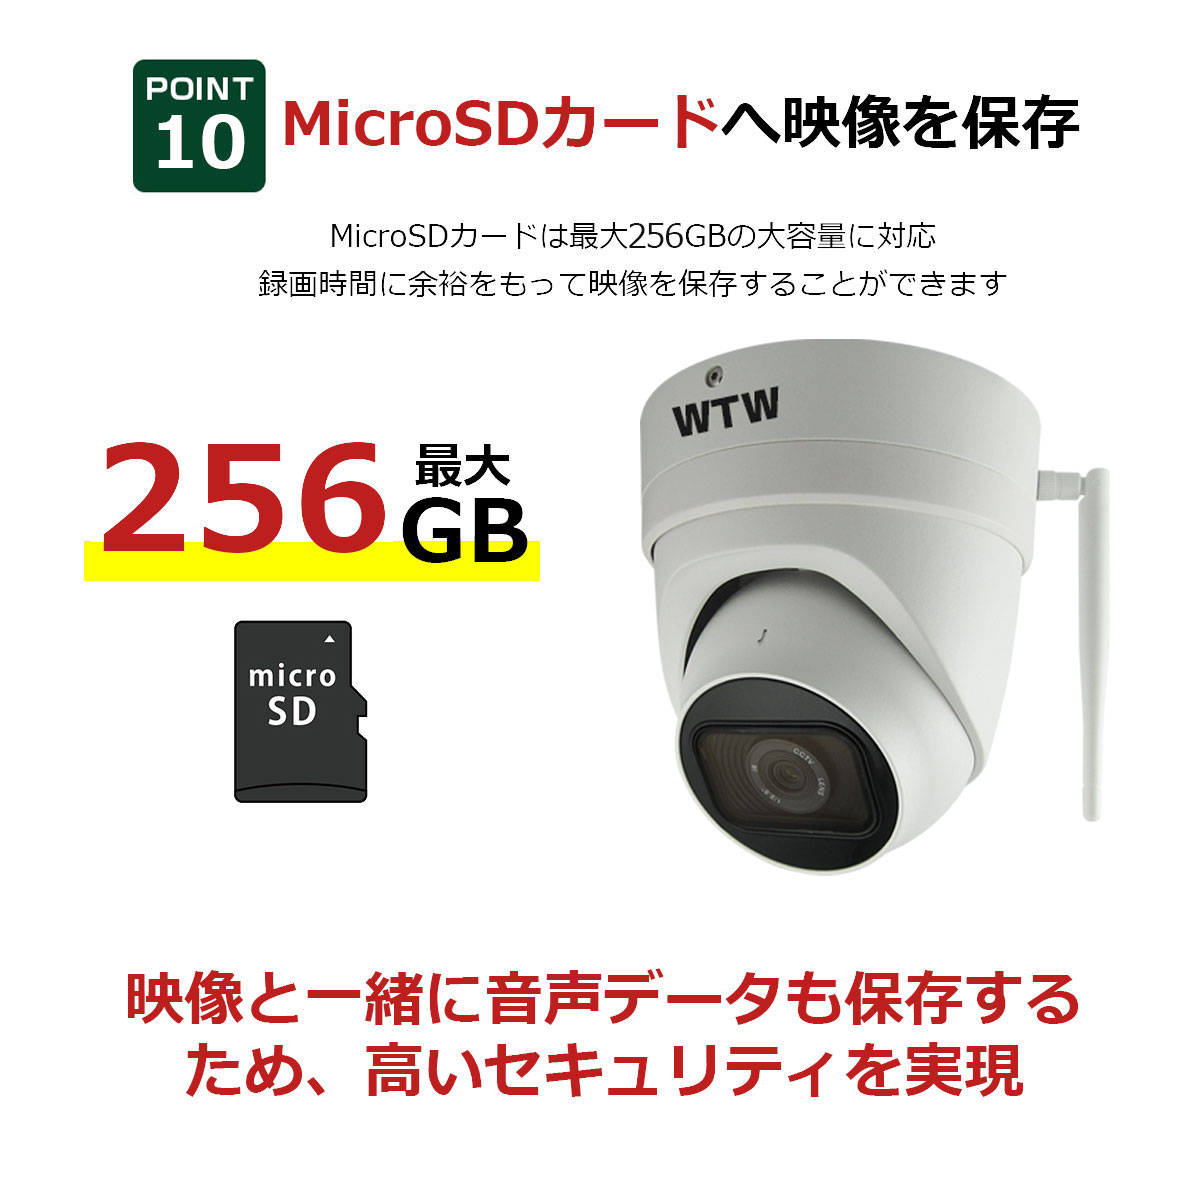 業務用 WIFI 548万画素 SDカード 256GB 防犯カメラ 屋外用 WIFI 548万画素 SDカード 256GB 防犯カメラ。